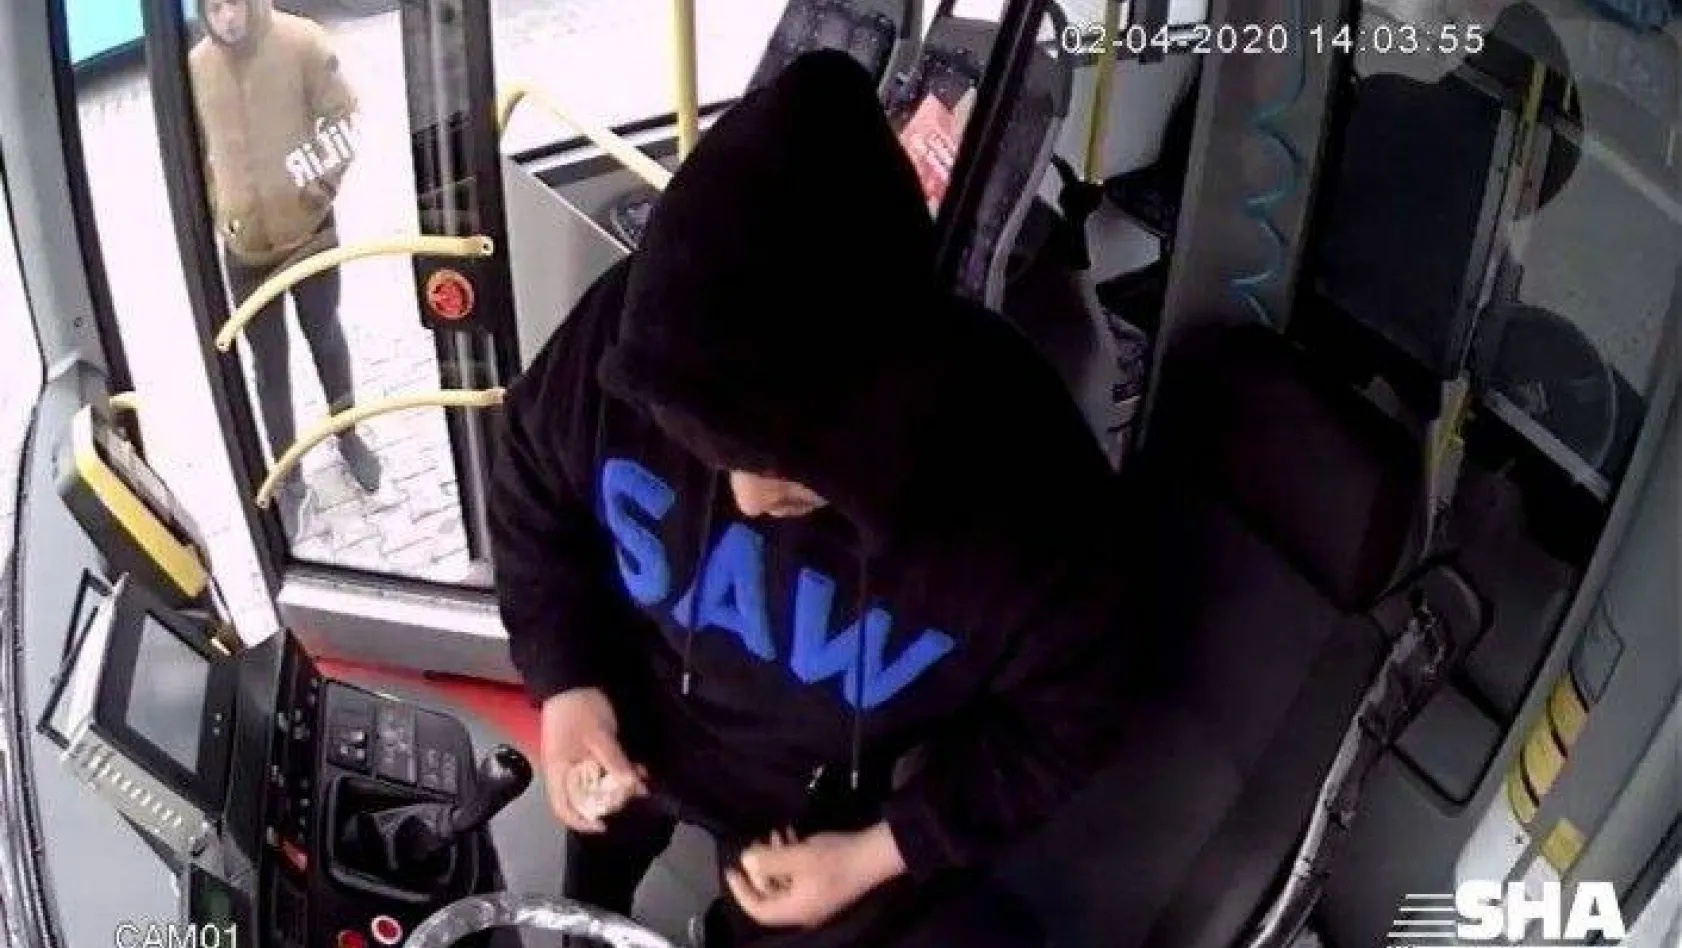 (ÖZEL) Park halindeki otobüse giren hırsızlık kamerada